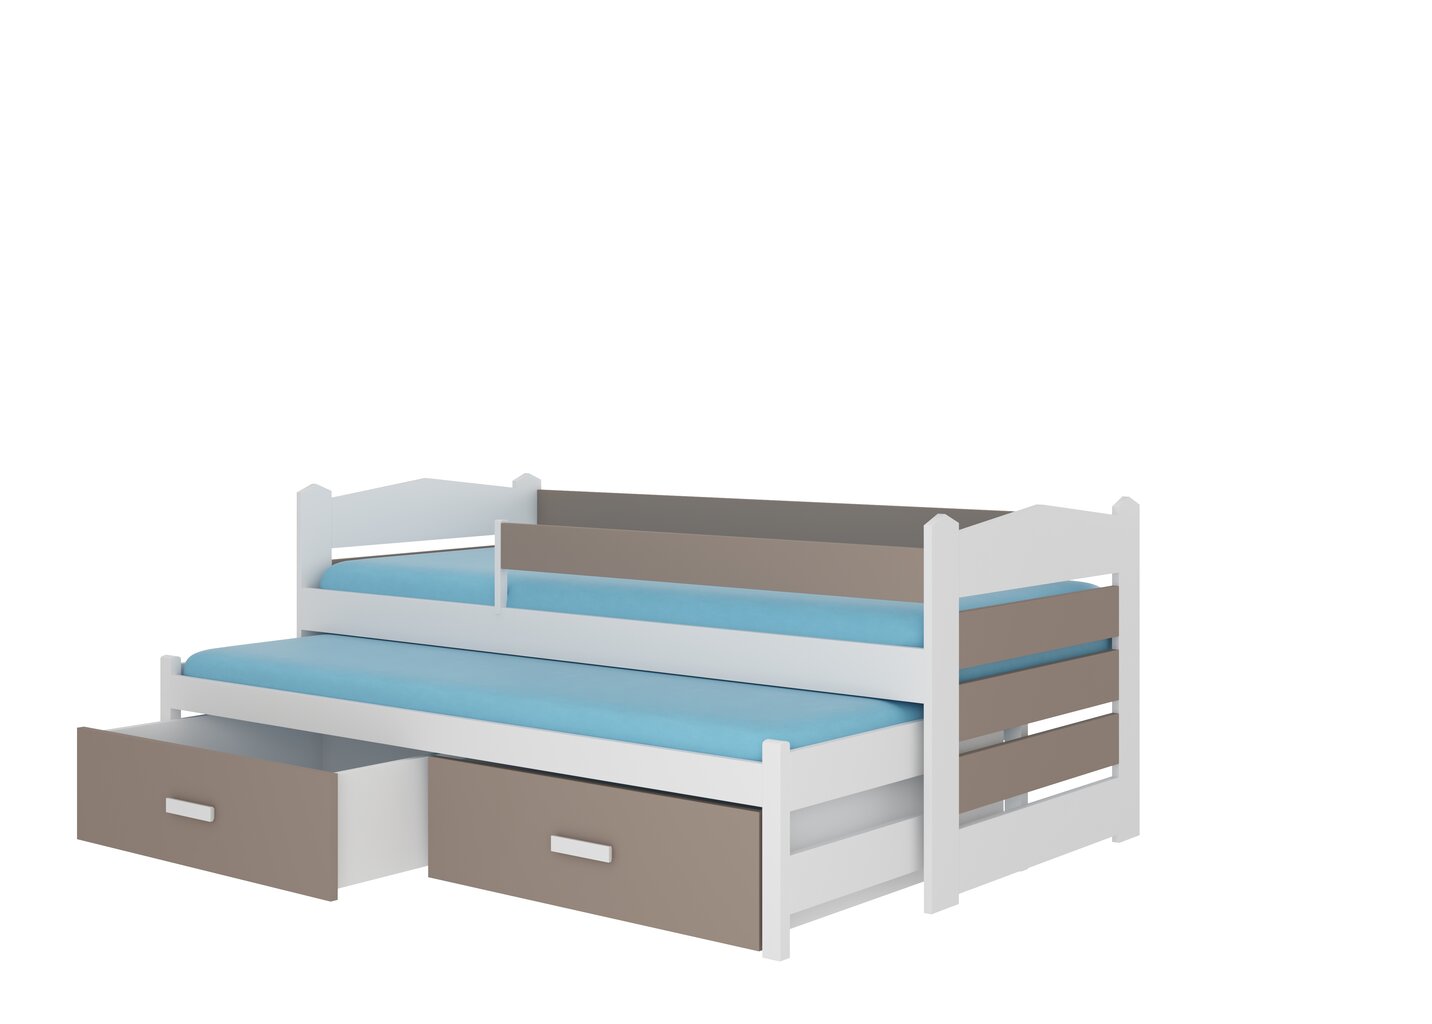 Bērnu gulta Adrk Furniture Tiarro 90x200 cm ar sānu aizsardzību, balta/gaiši brūna cena un informācija | Bērnu gultas | 220.lv